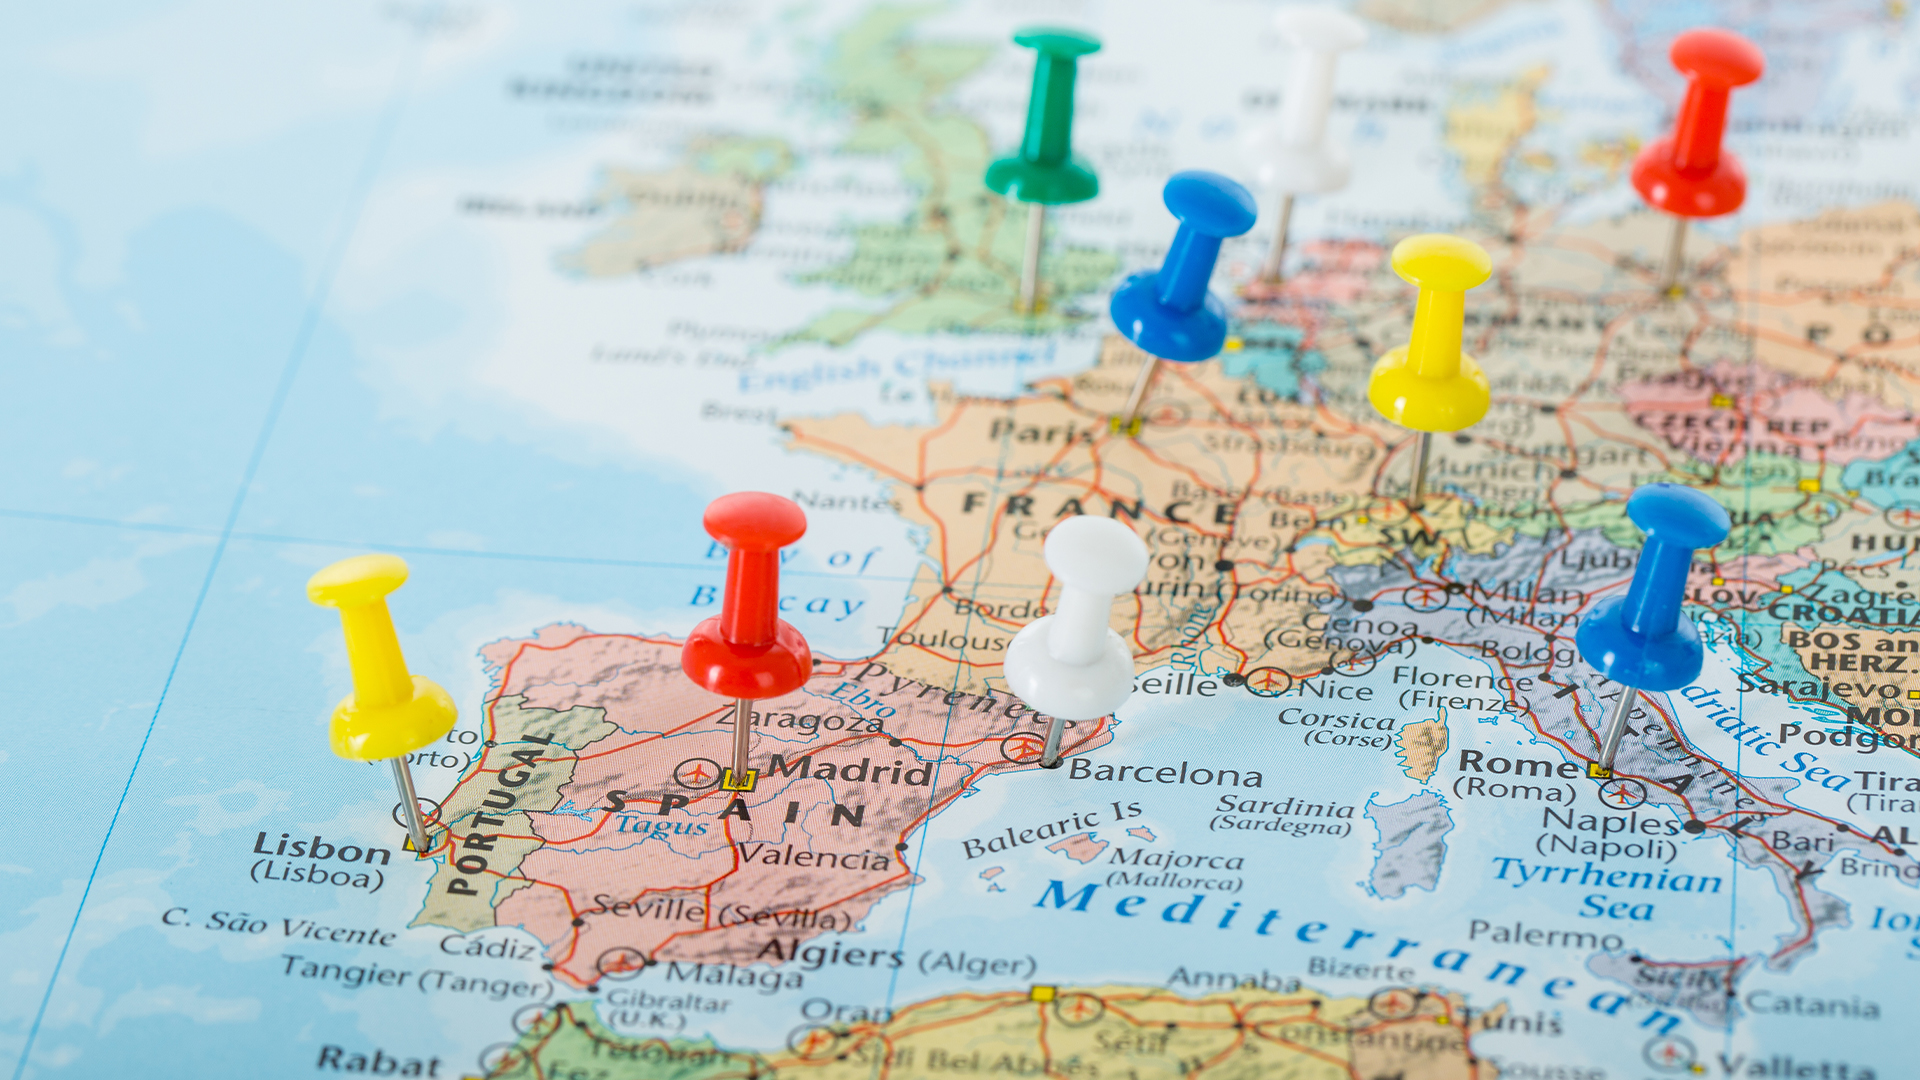 Otestuj sa: Ktorý štát je vyznačený na slepej mape Európy?